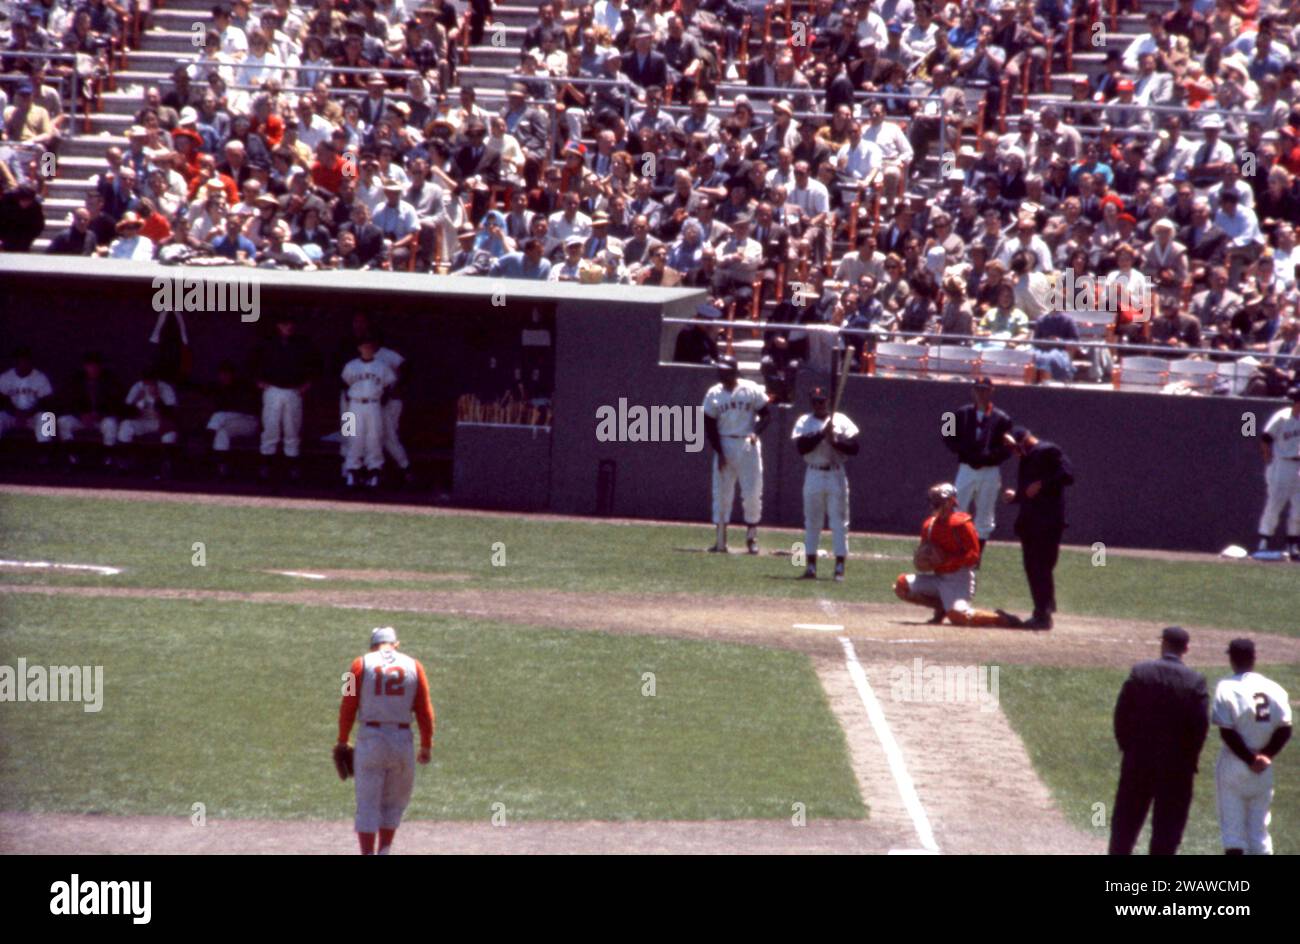 SAN FRANCISCO, CA - 30 MAI : Willie Mays #24 des Giants de San Francisco attend sur le pont alors que le receveur Jerry Zimmerman #8 des Reds de Cincinnati réchauffe le nouveau lanceur lors d'un match MLB le 30 mai 1961 au Candlestick Park à San Francisco, Californie. Le troisième joueur de base des Reds est Gene Freese #12, le troisième entraîneur des Giants est Salty Parker #2 et l'arbitre Frank Secory. (Photo de Hy Peskin) *** Légende locale *** Jerry Zimmerman;Gene Freese;Willie Mays;Frank Secory;Salty Parker Banque D'Images